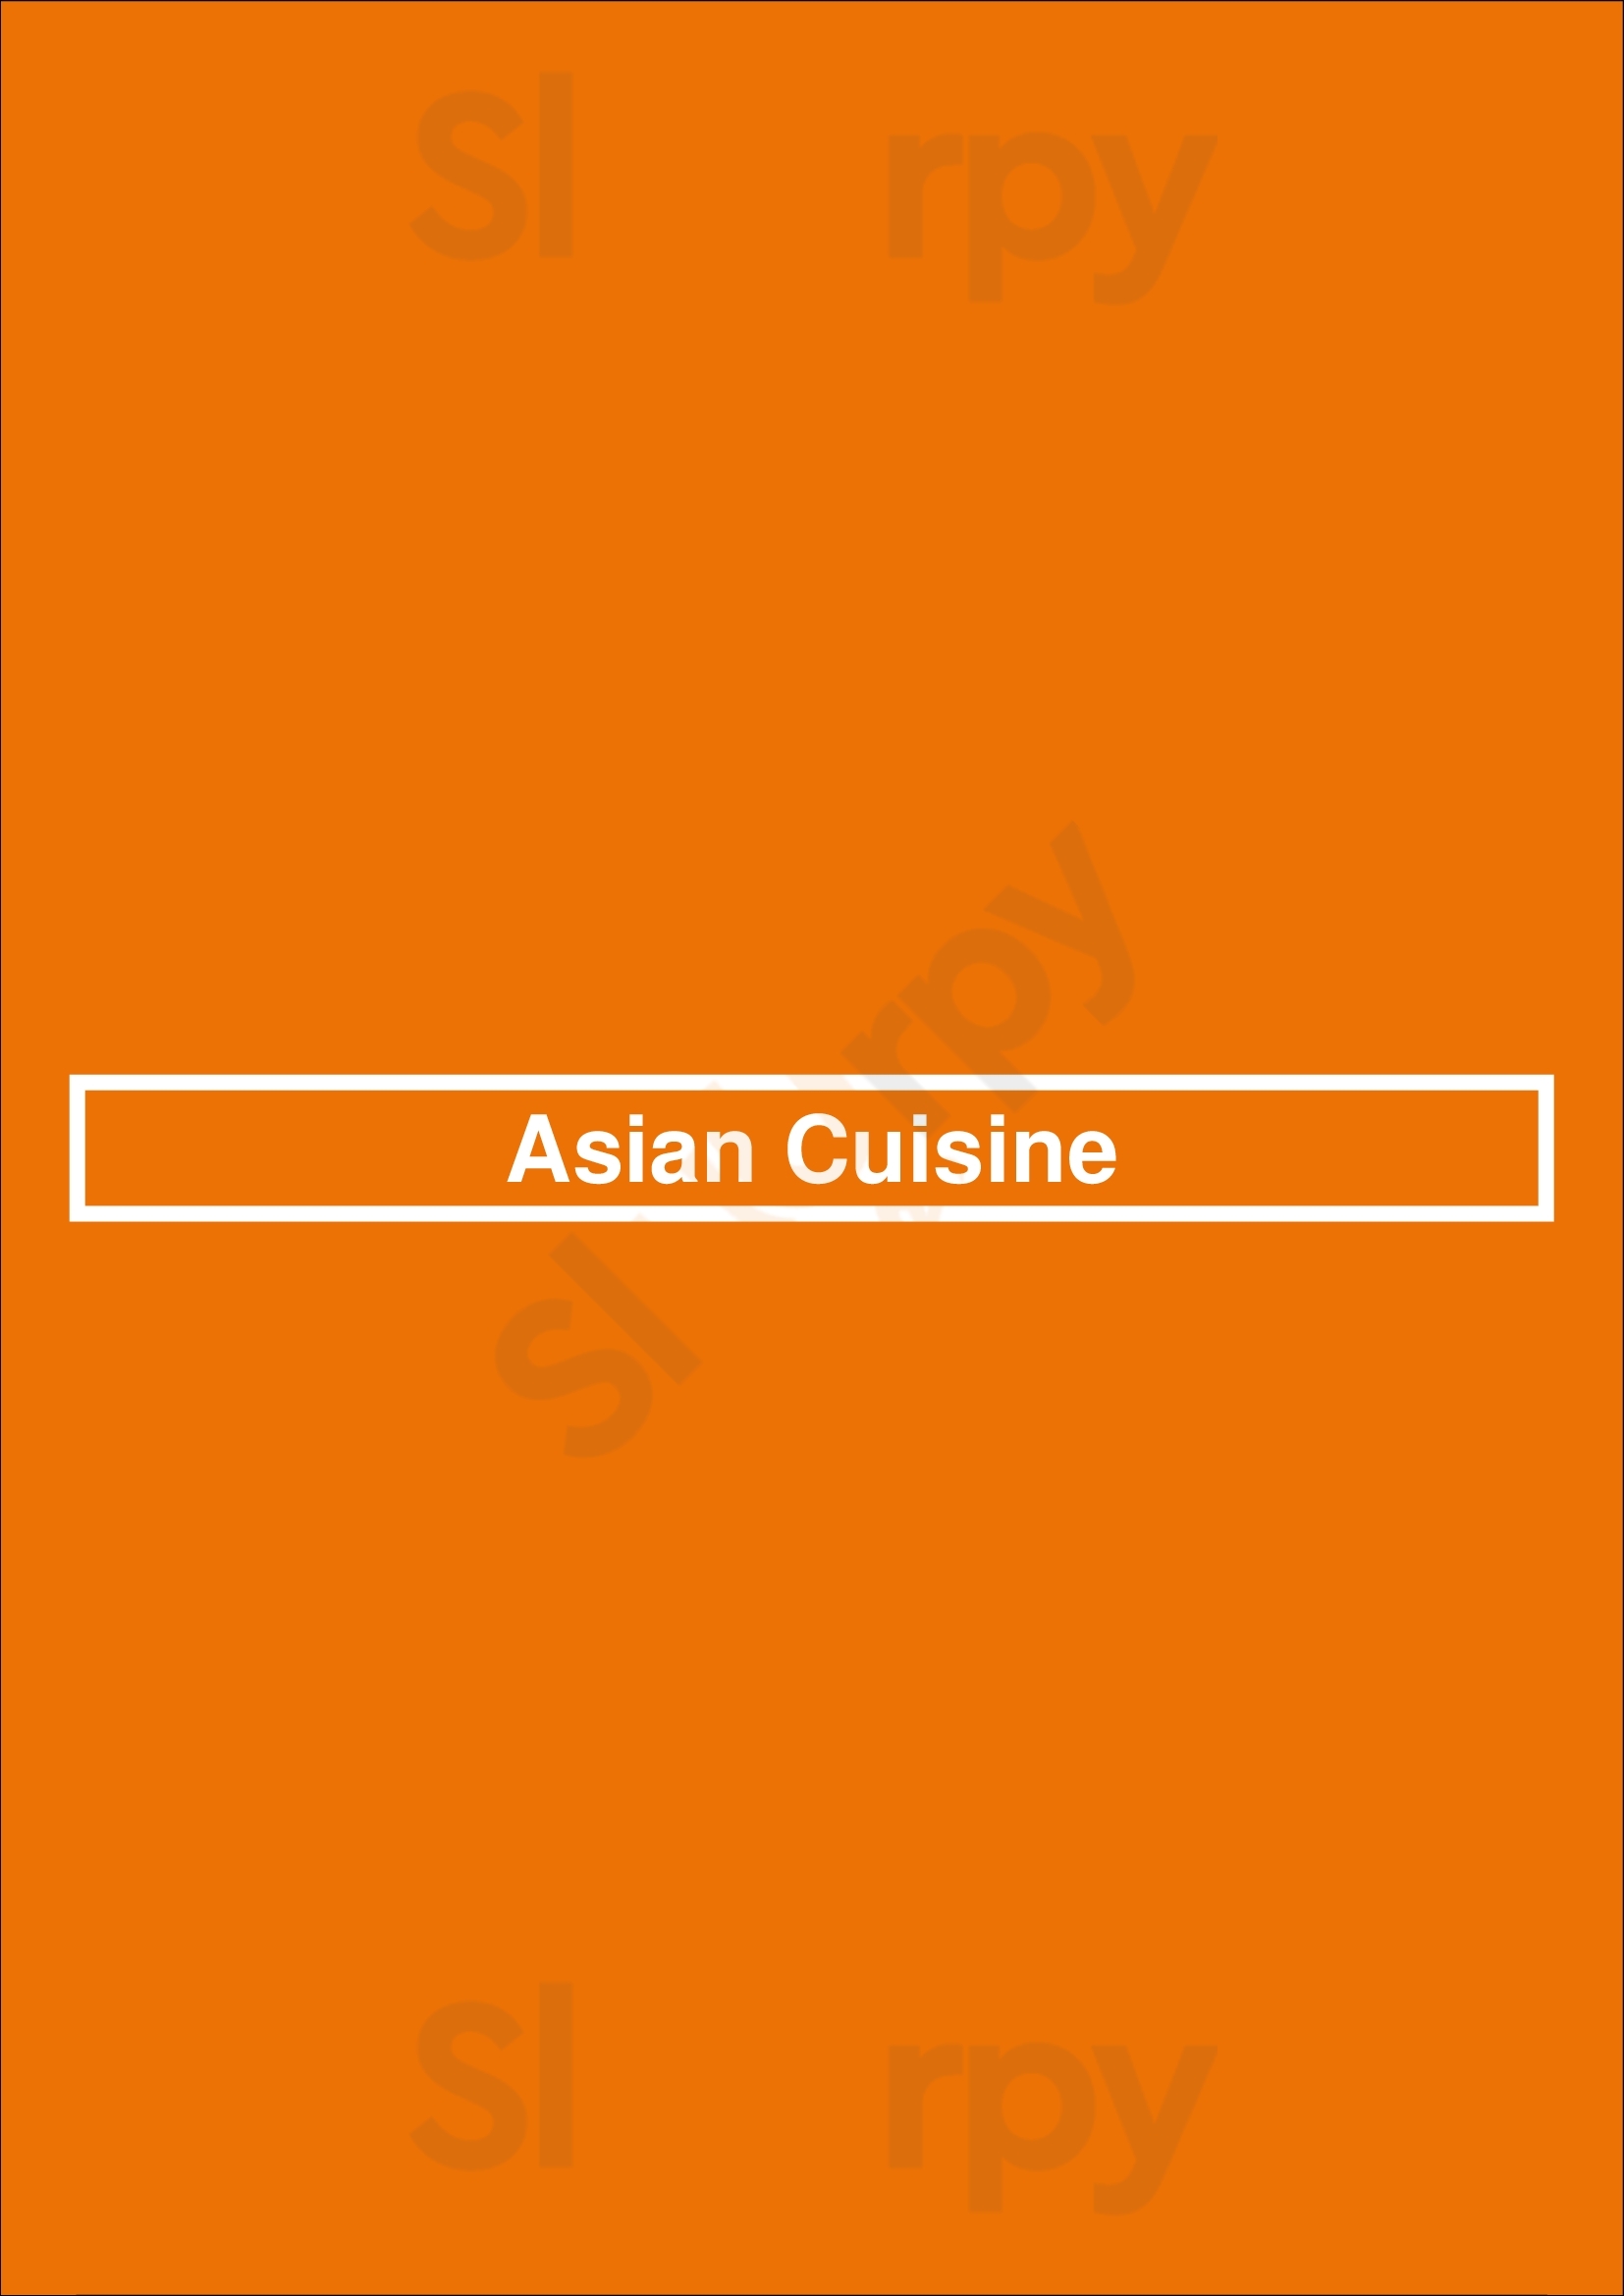 Asian Cuisine Indianapolis Menu - 1